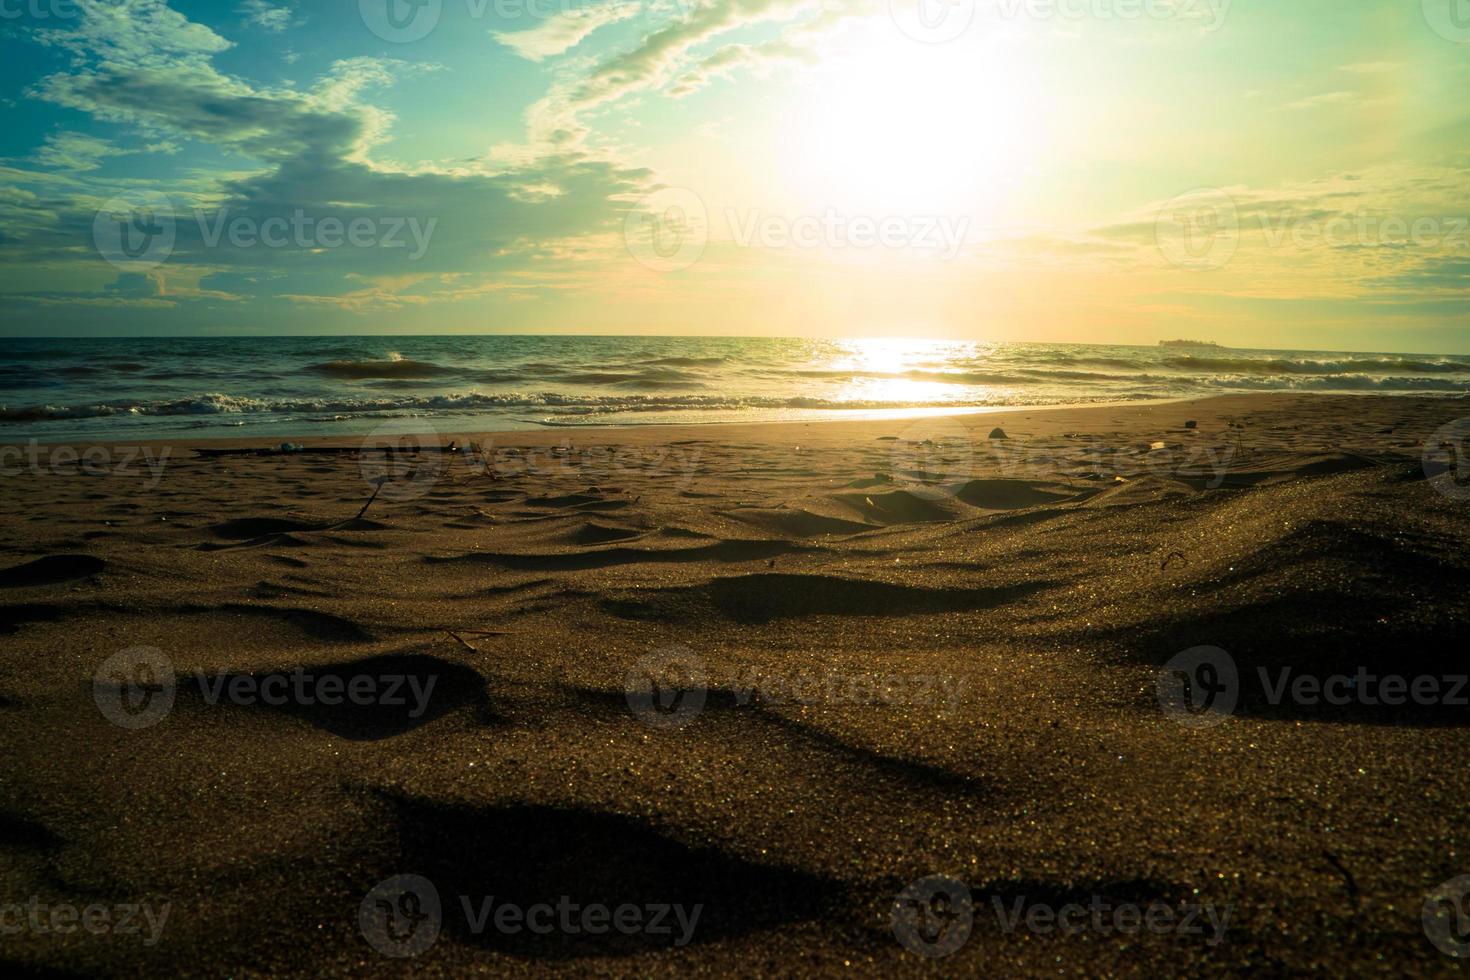 oceaan zandstrand landschap bij zonsondergang foto